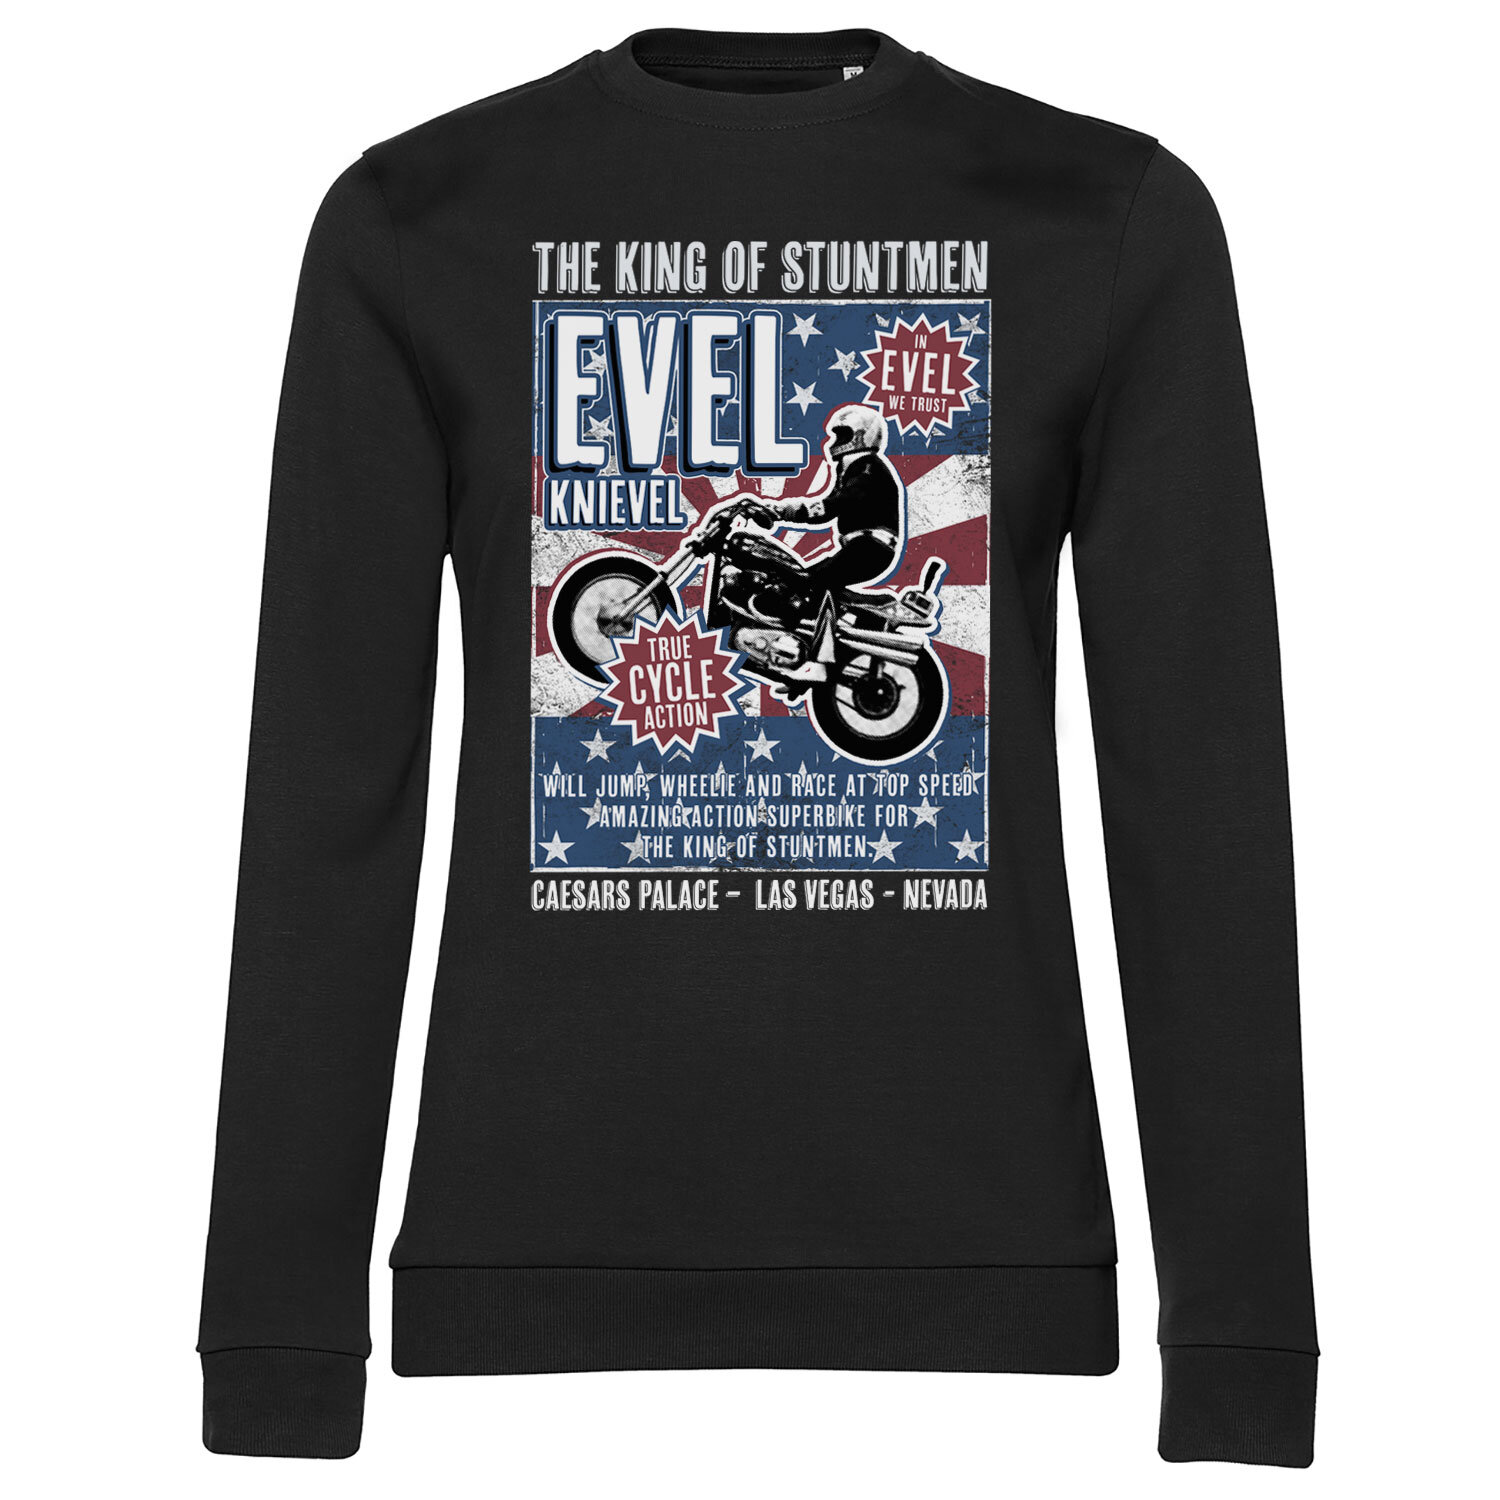 Evel Knievel Poster Girly Sweatshirt